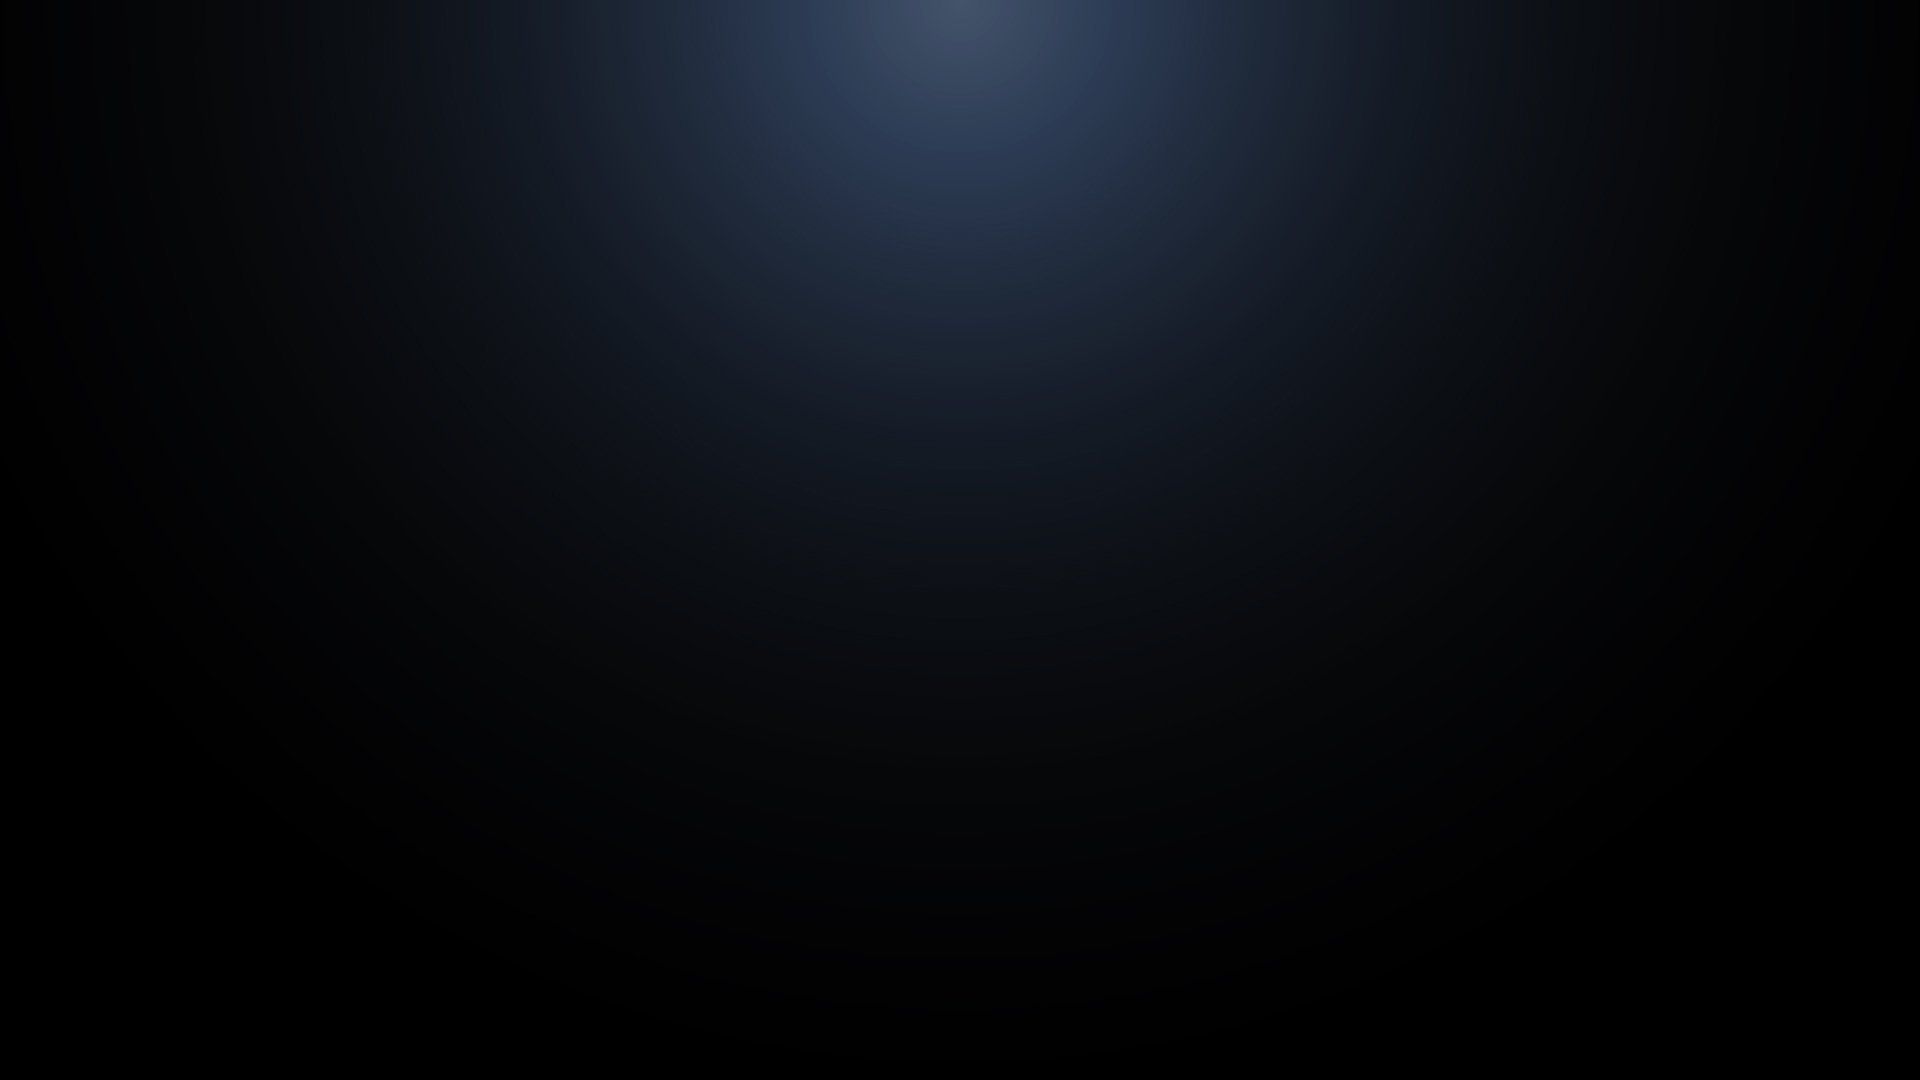 Free download Black Light Background [1920x1080] for your Desktop